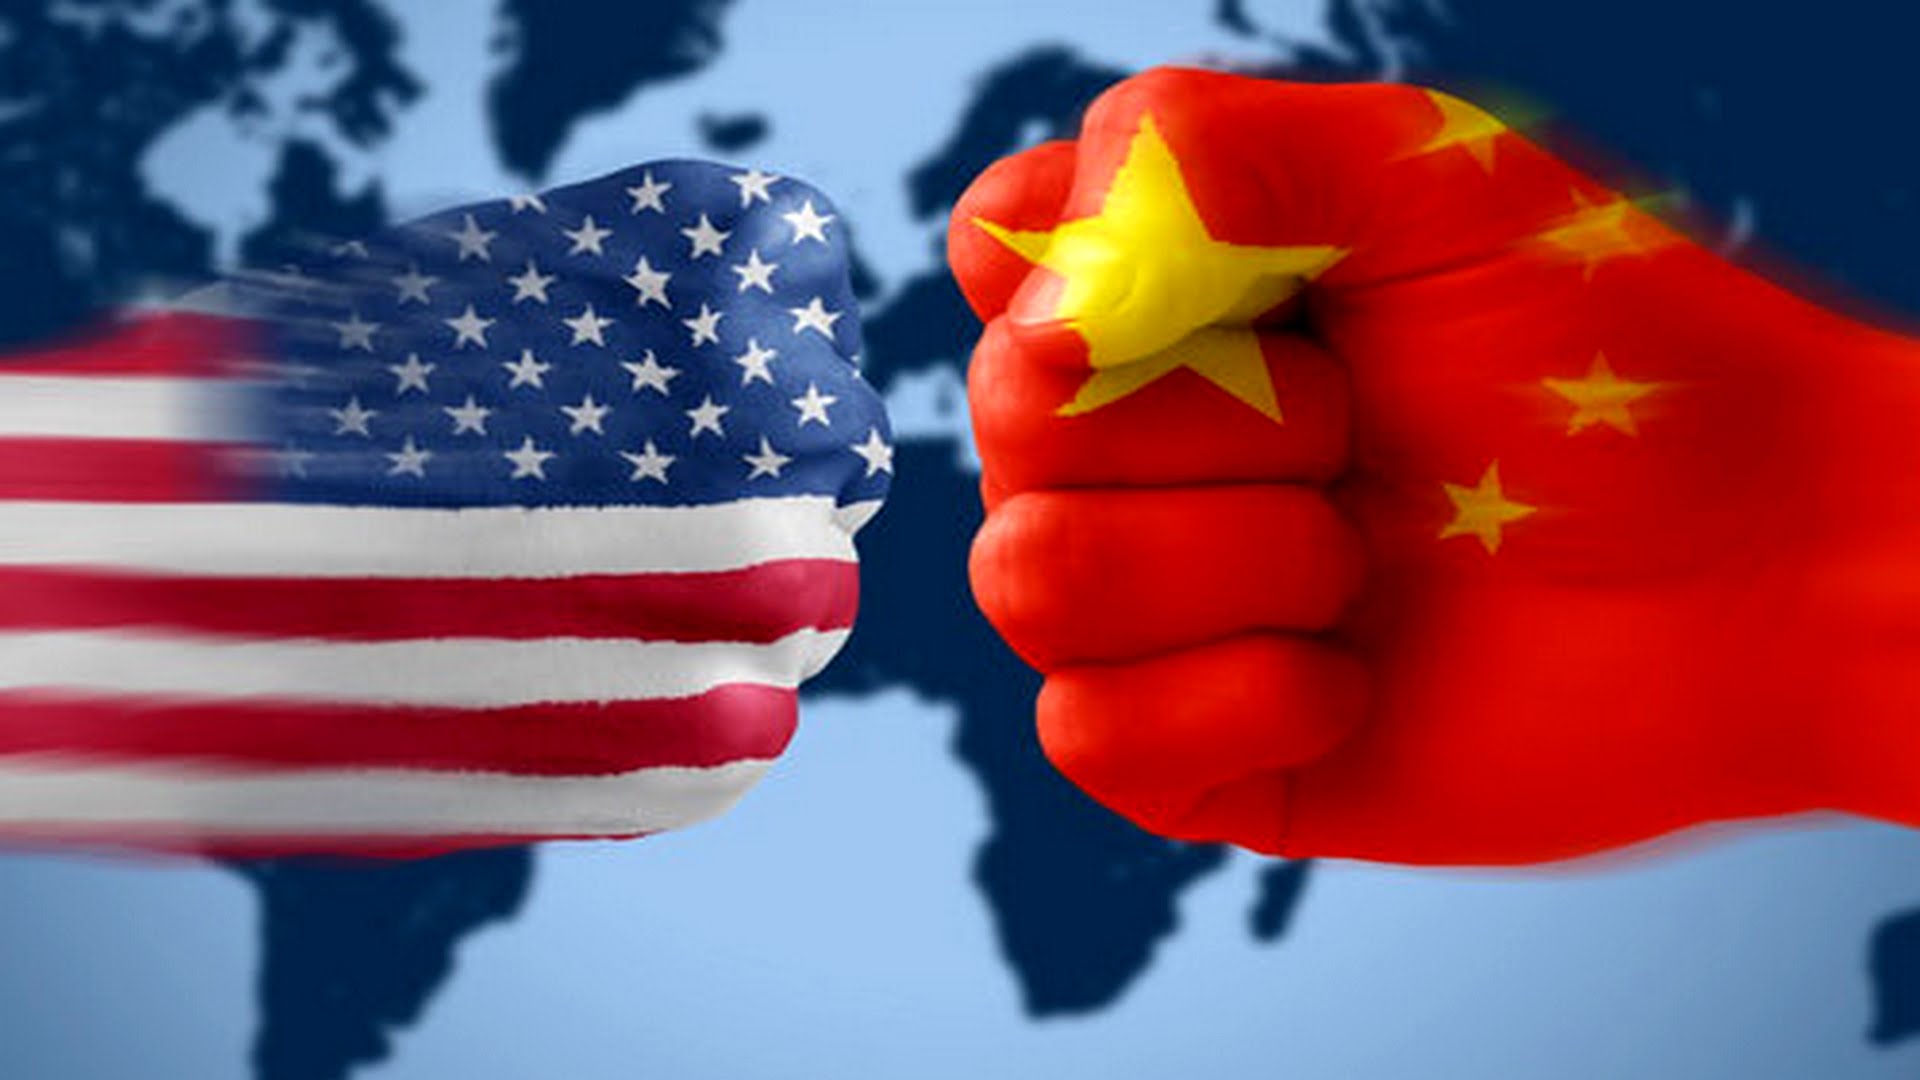 Νέο επεισόδιο Κίνας-ΗΠΑ: Το Πεκίνο καλεί την Ουάσινγκτον να σταματήσει τις «αδικαιολόγητες συκοφαντίες και κατηγορίες»